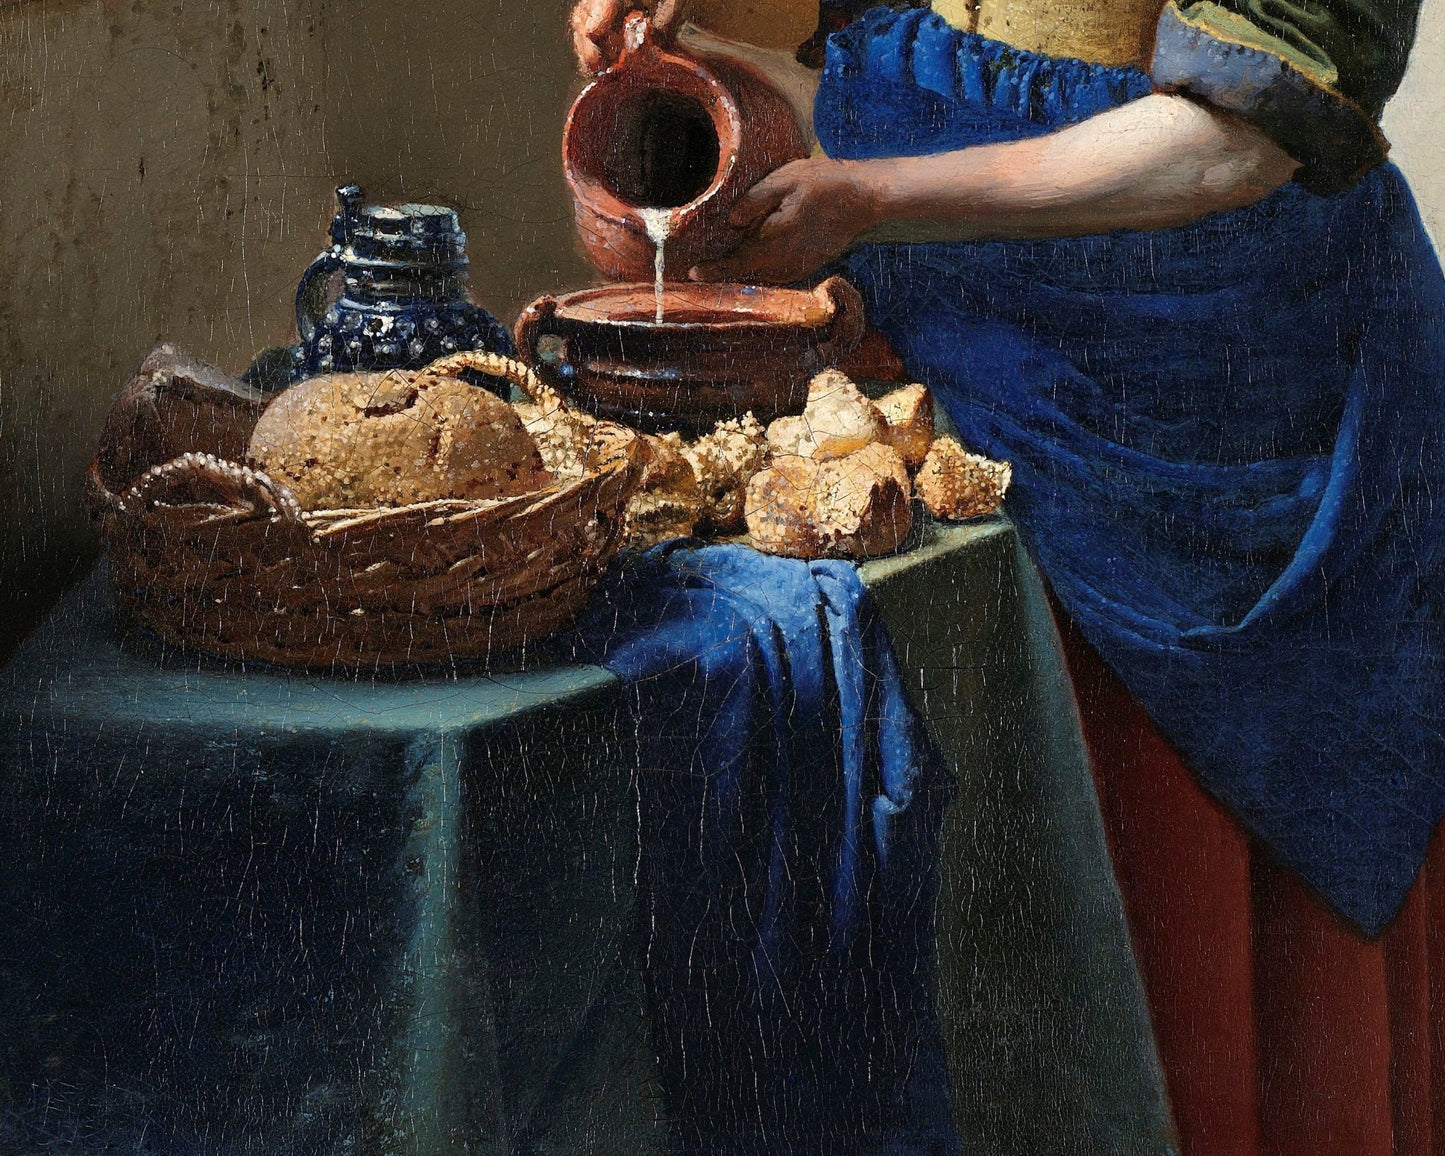 Johannes Vermeer "The Milkmaid" (c.1657 - 1658) - Mabon Gallery